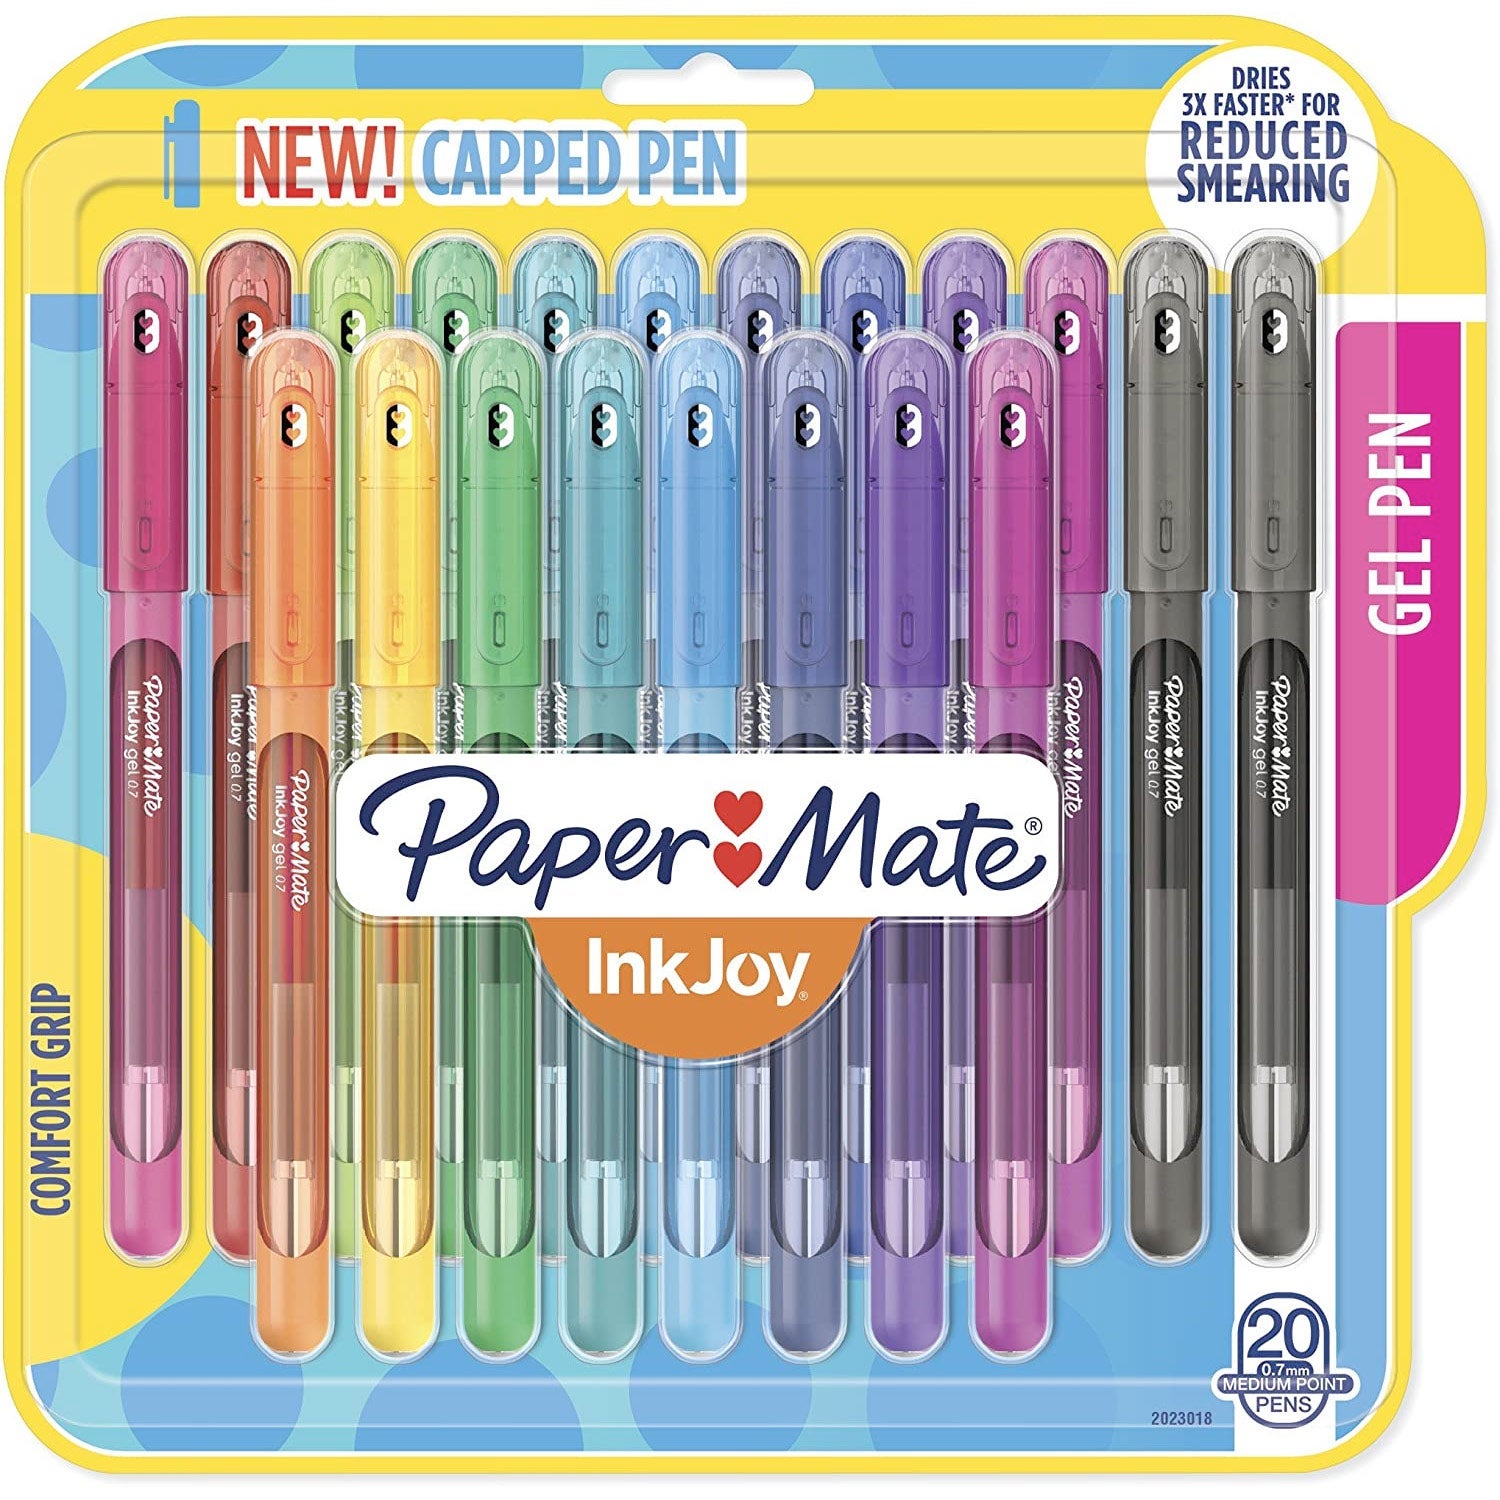 PaperMate InkJoy Gel Pens